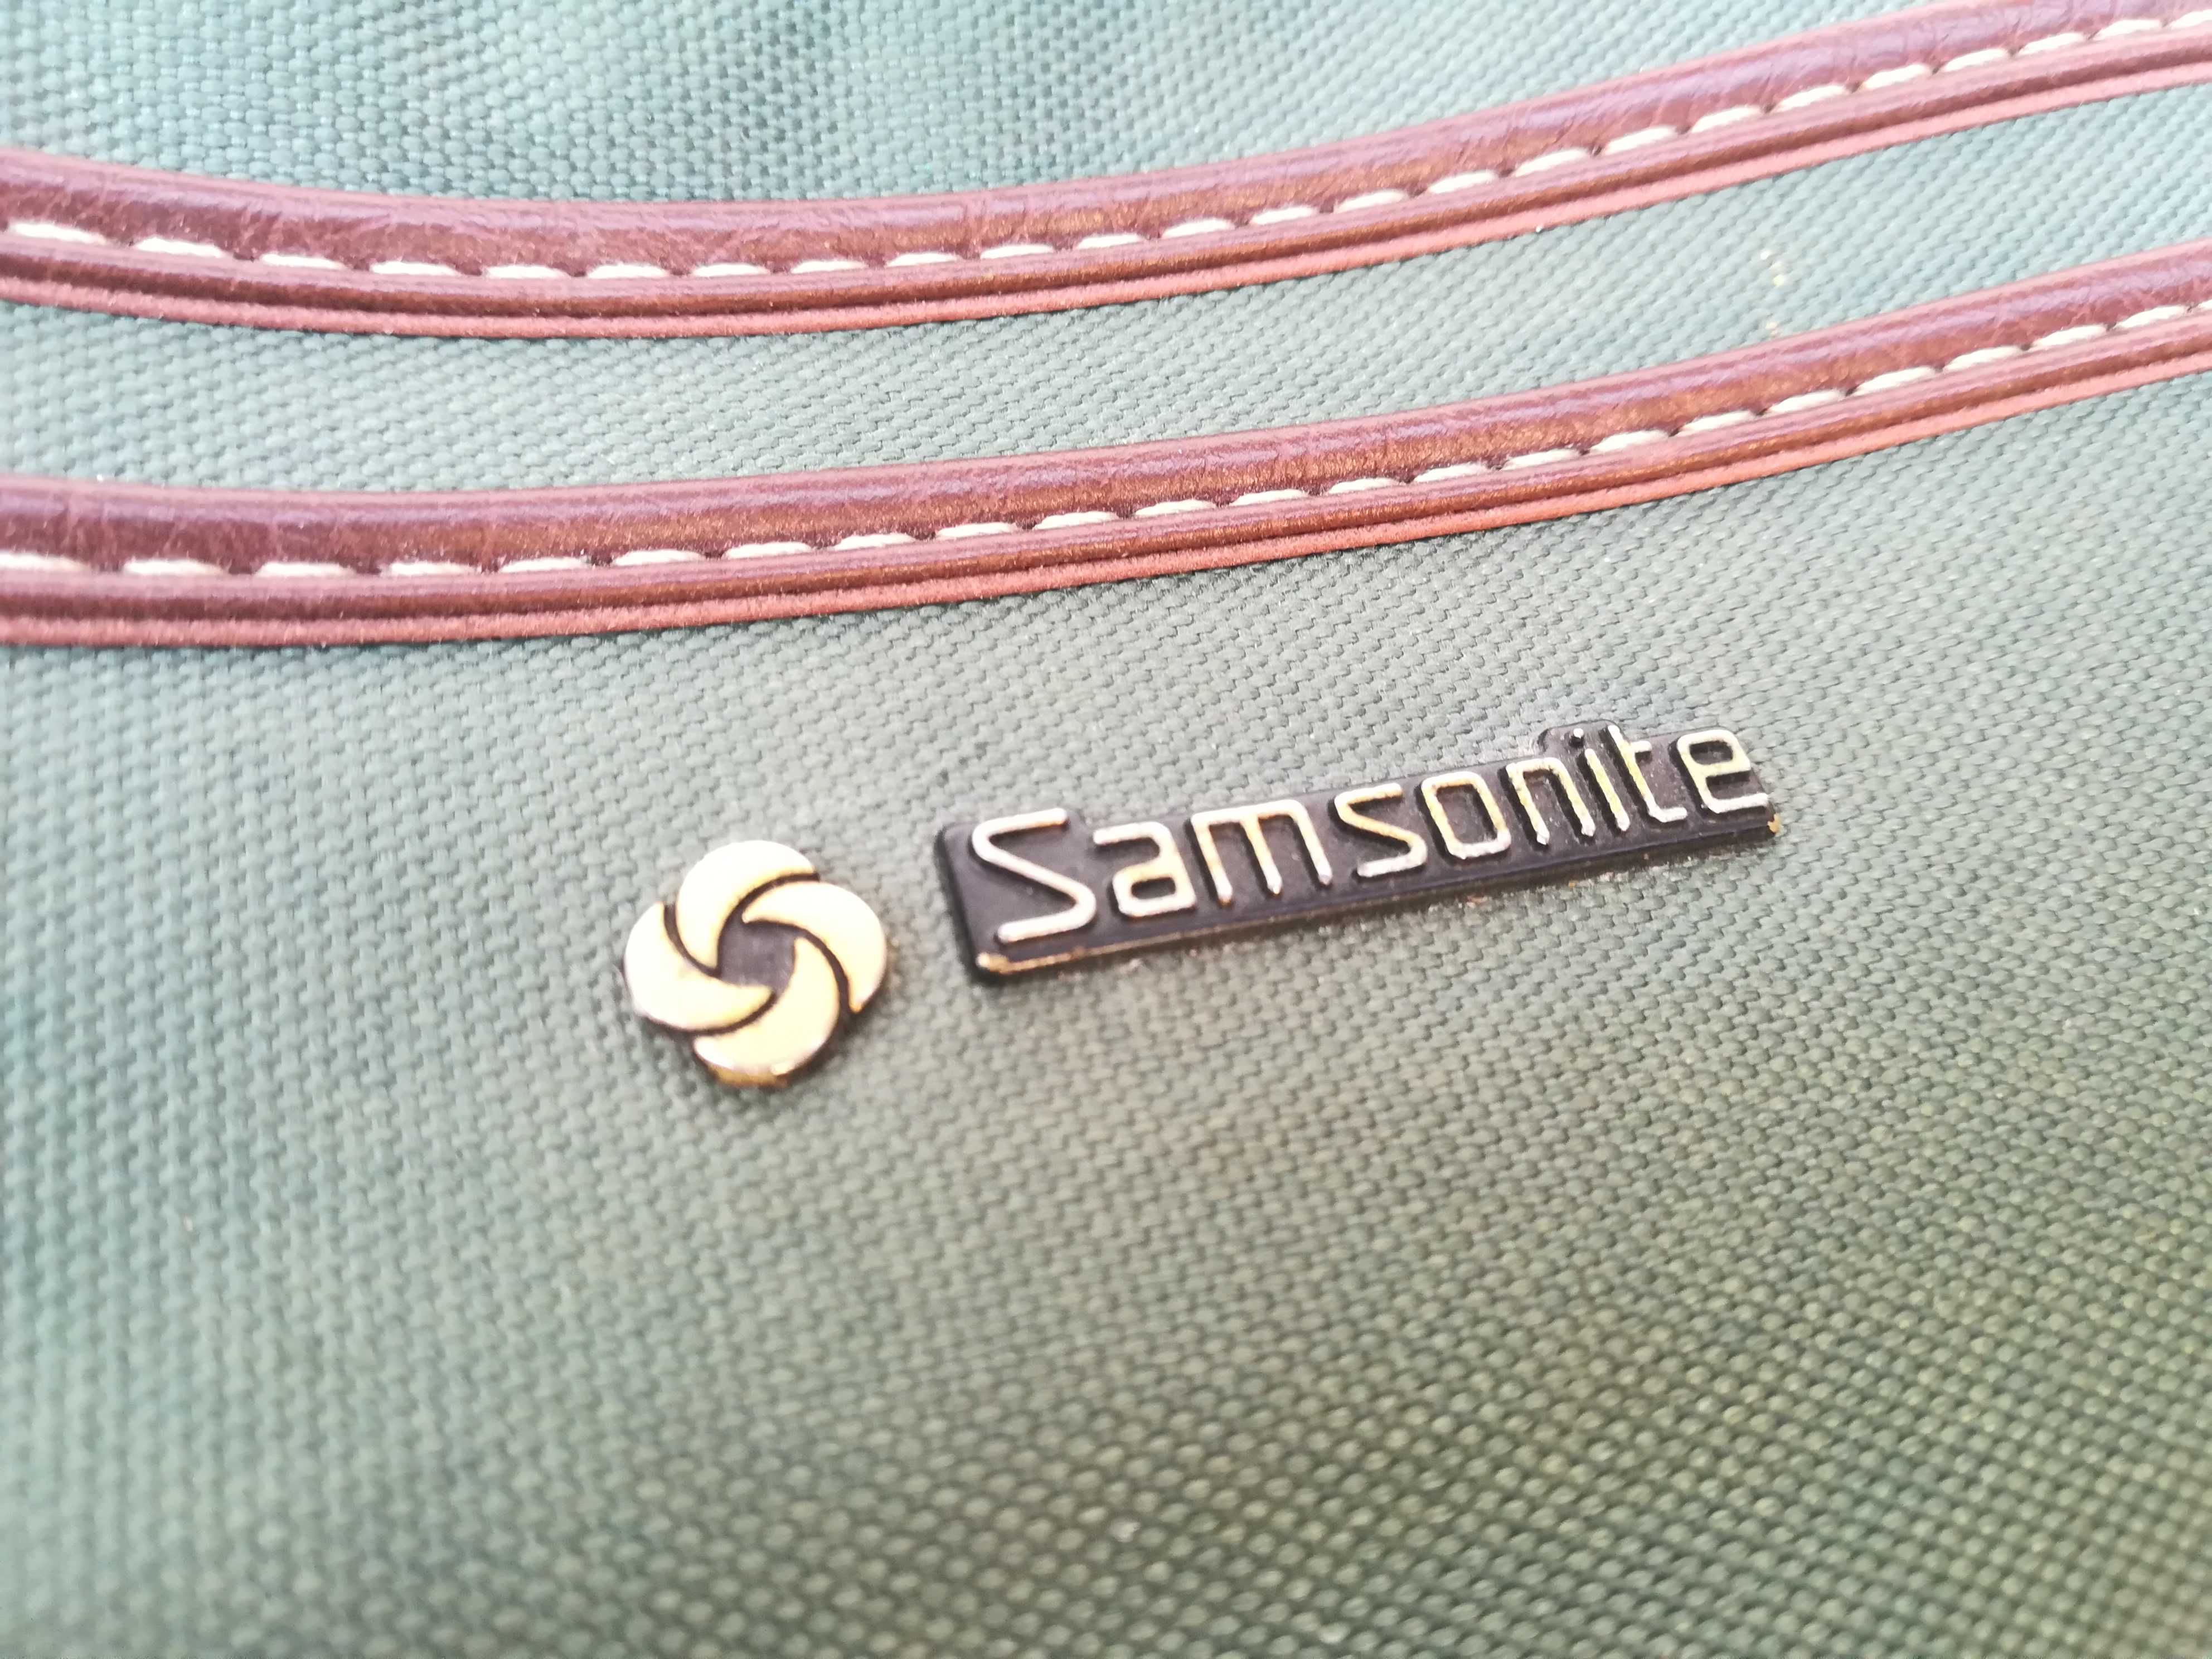 Samsonite sling bag GREEN LINE